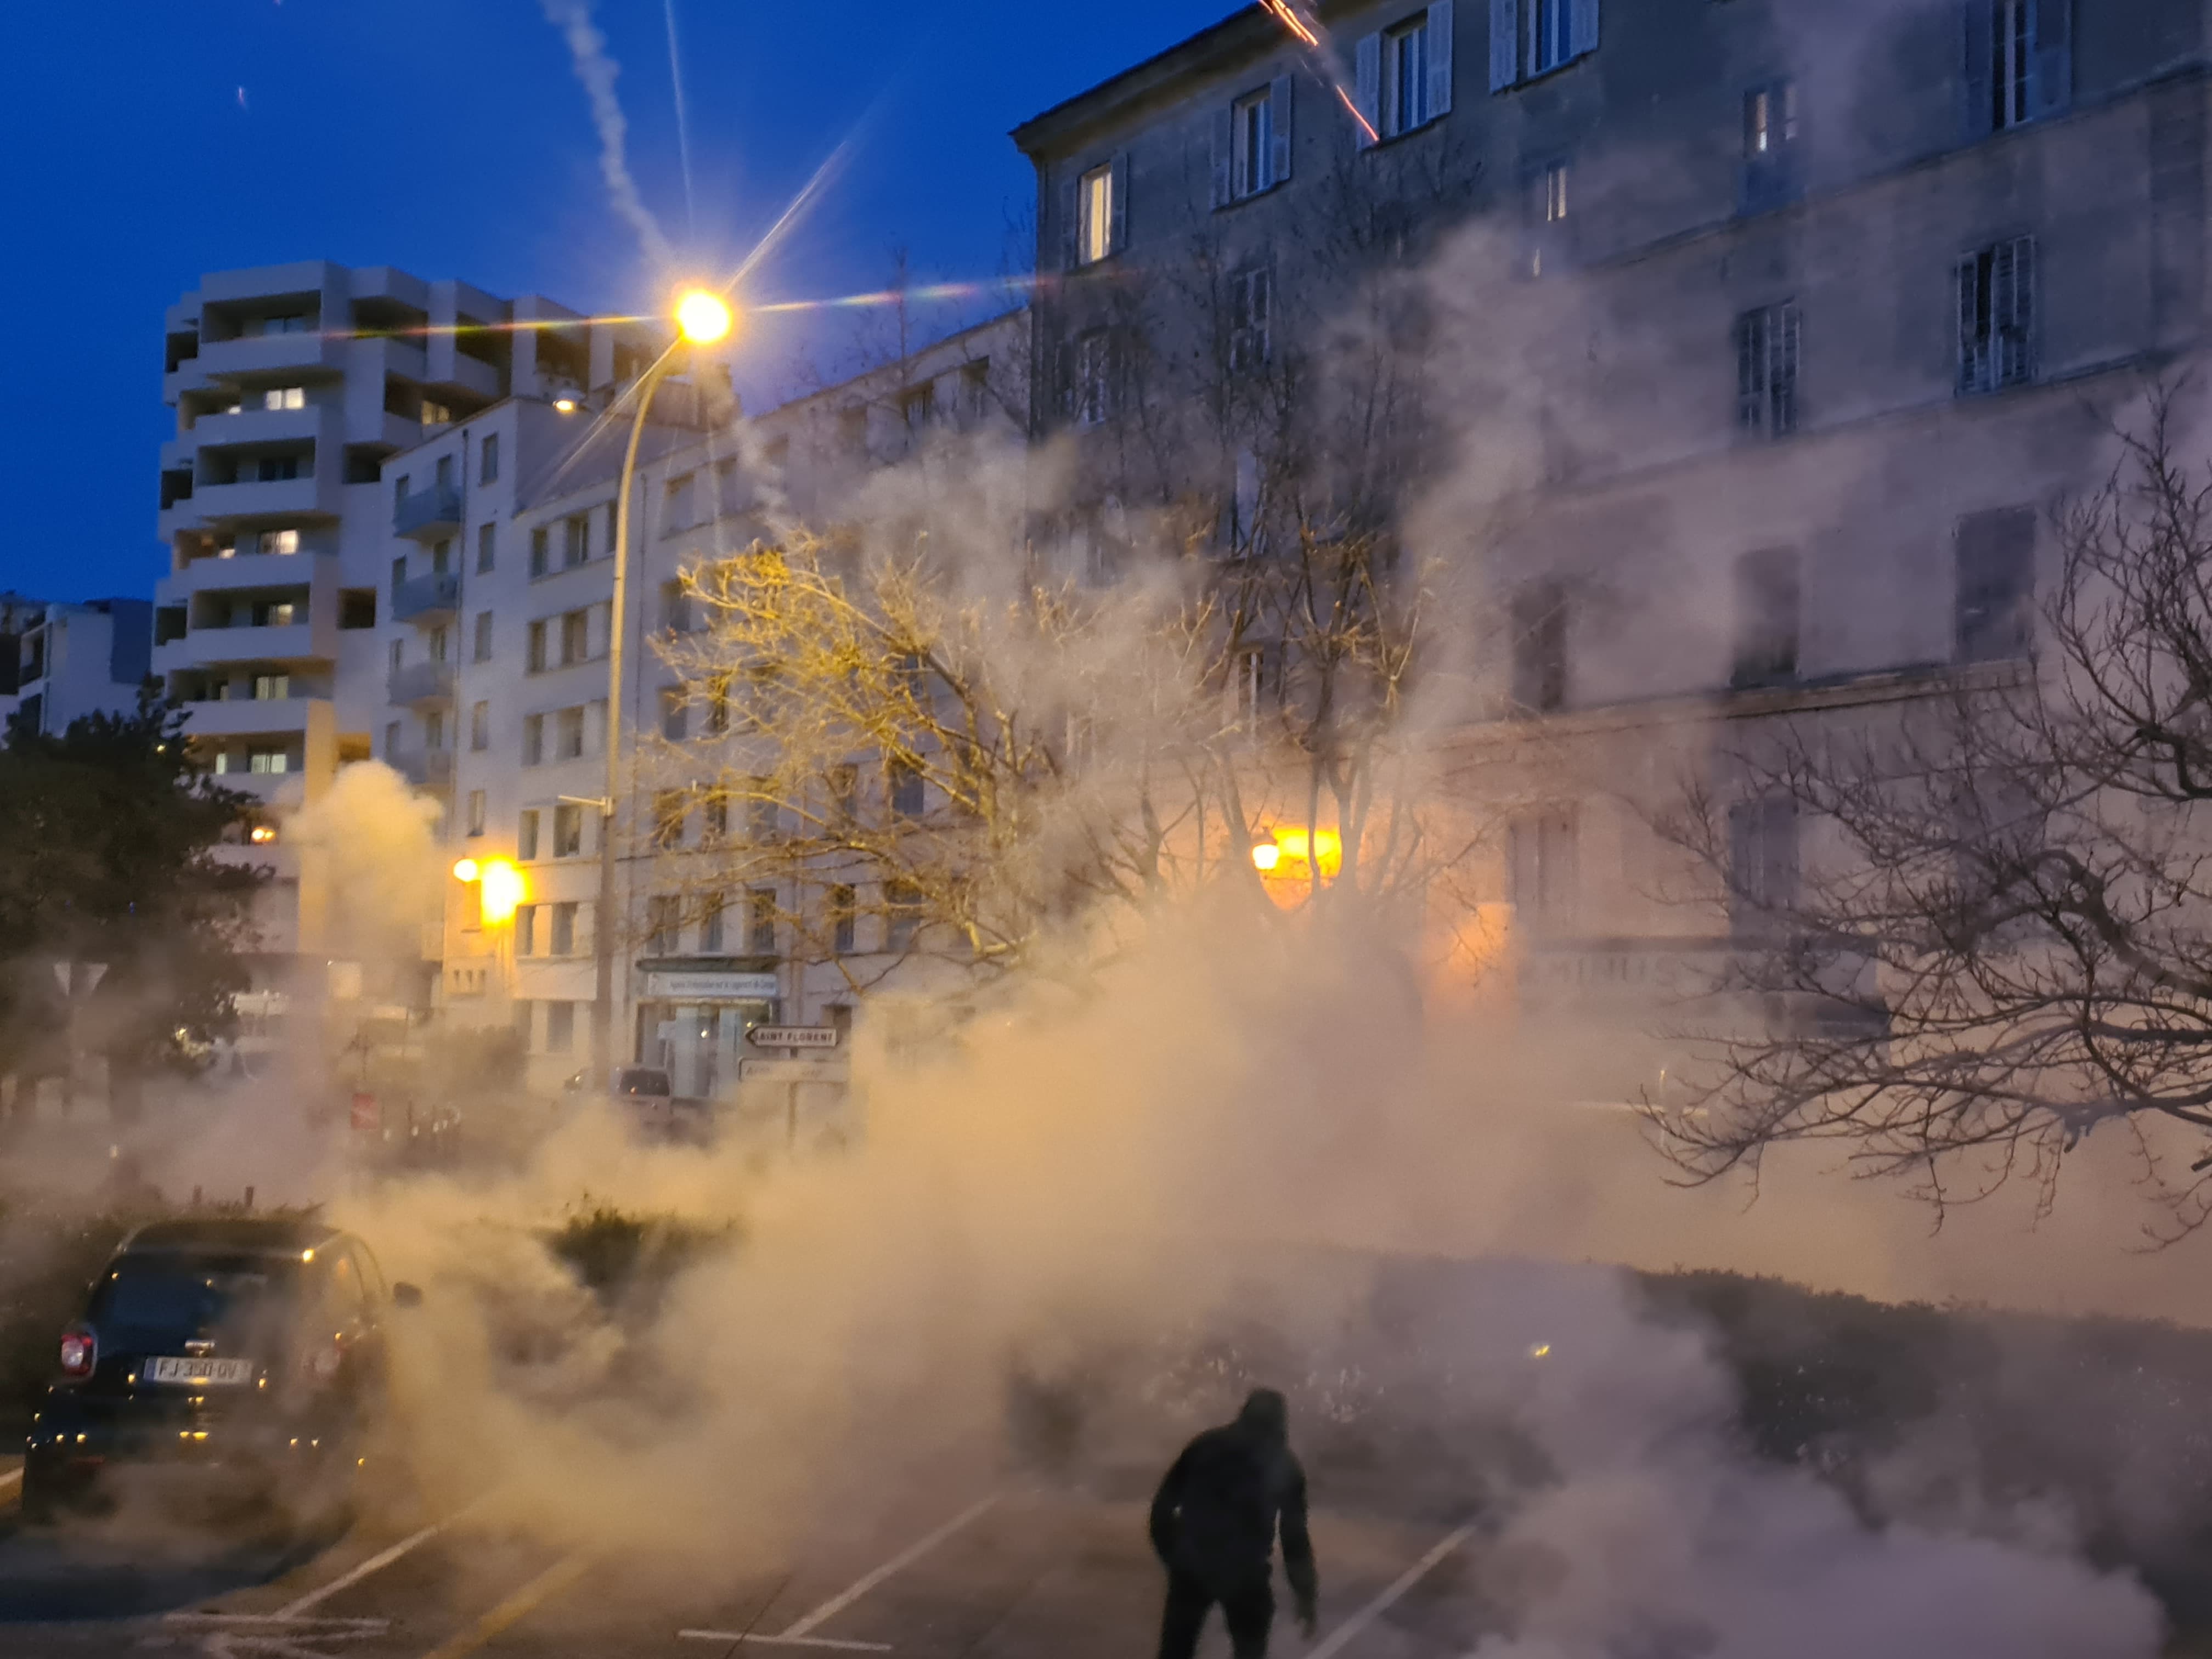 Les abords de la préfecture de Bastia encore enfumées par les gaz lacrymogènes ce jeudi 10 mars. Crédits Photo : Pierre-Manuel Pescetti